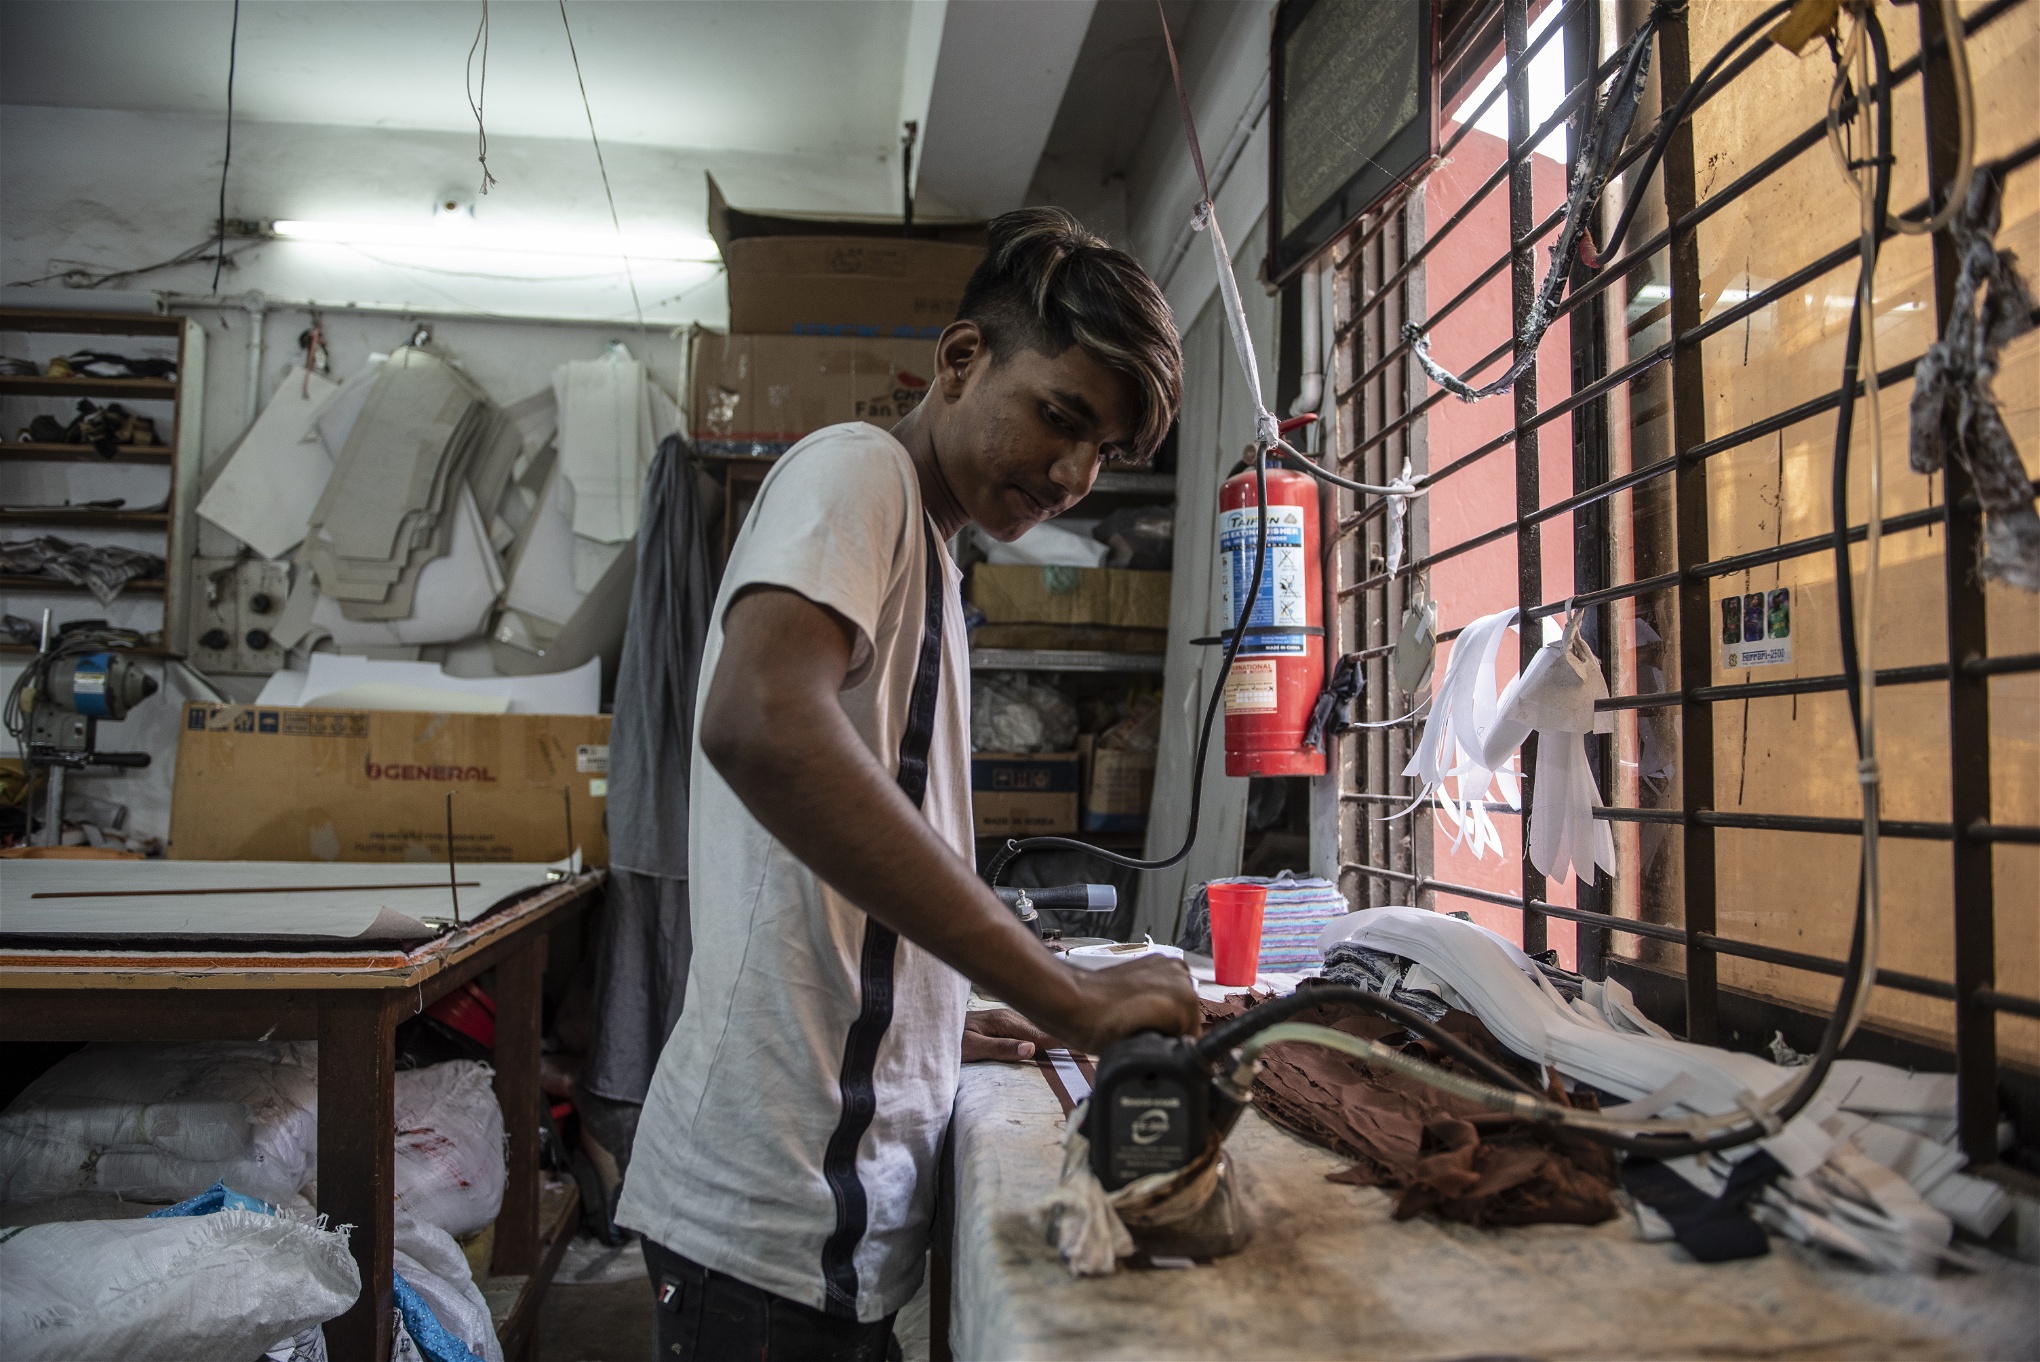 Sohel Sheik, 14, arbetar i en liten textilfabrik inne i gamla Dhaka. November 2019 Här jobbar han från morgon till kväll för att hjälpa till med familjens försörjning. Foto: Troy Enekvist 